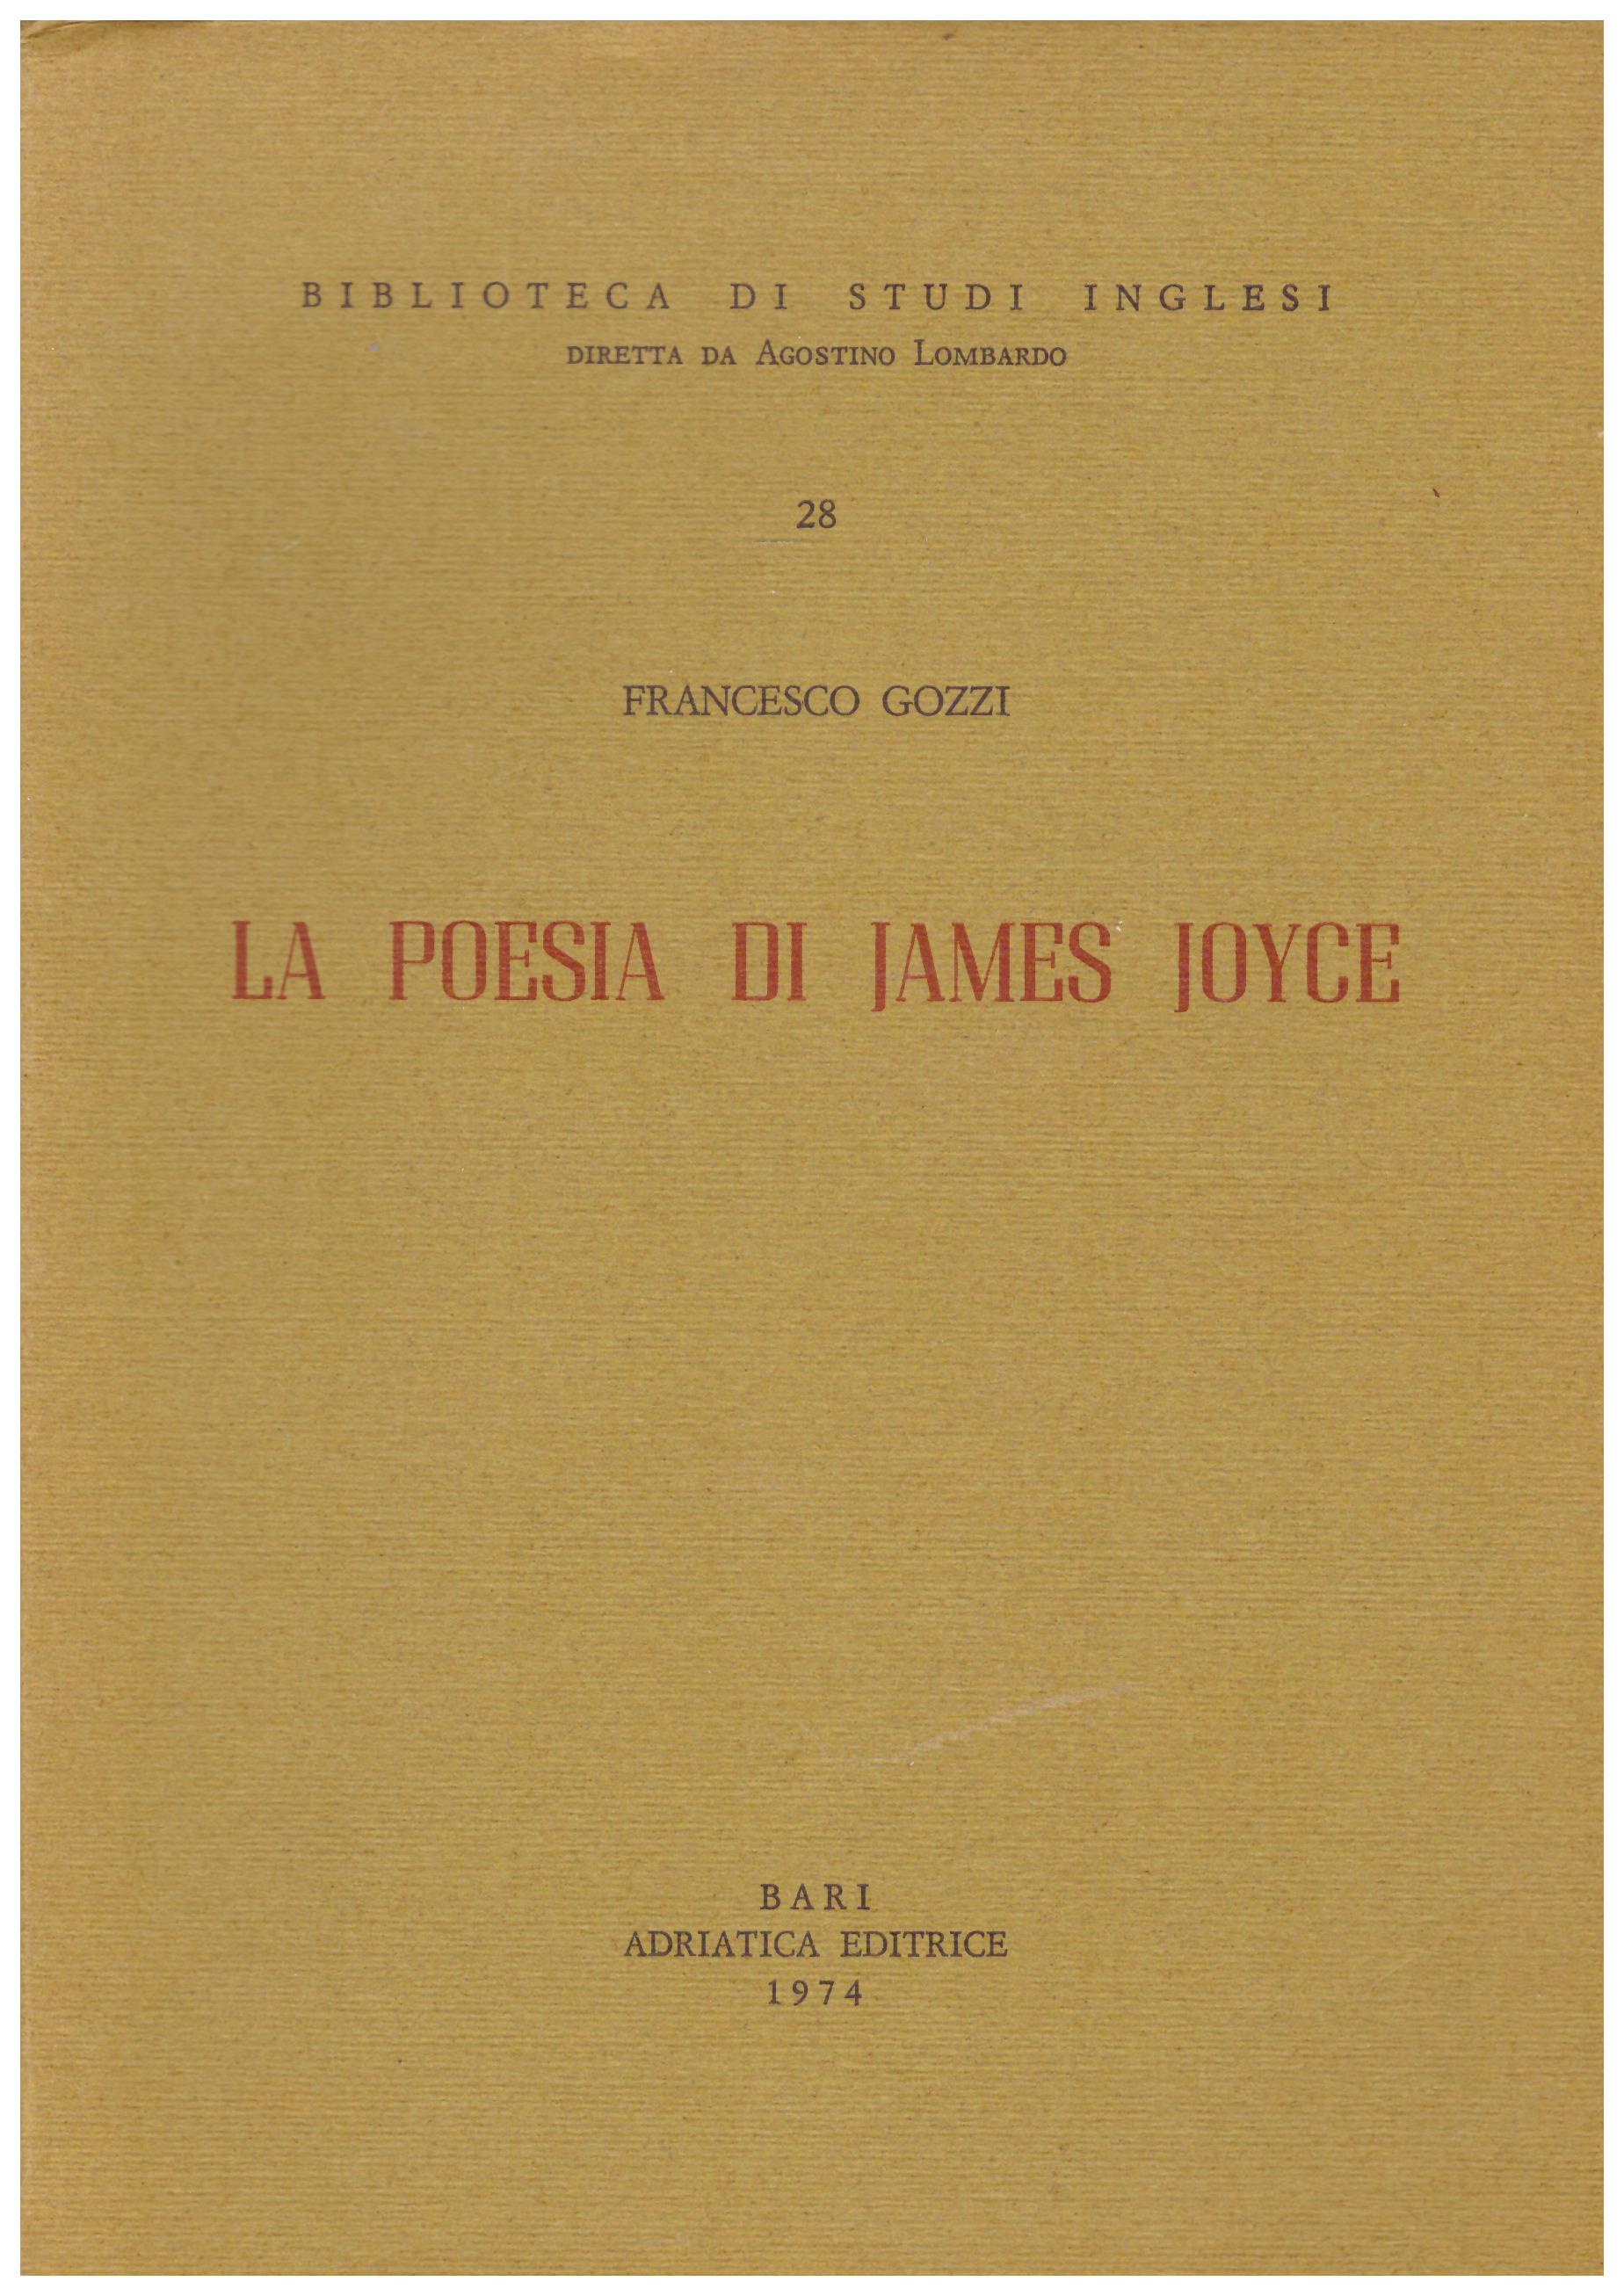 La poesia di James Joyce. Collana: Biblioteca di studi inglesi.